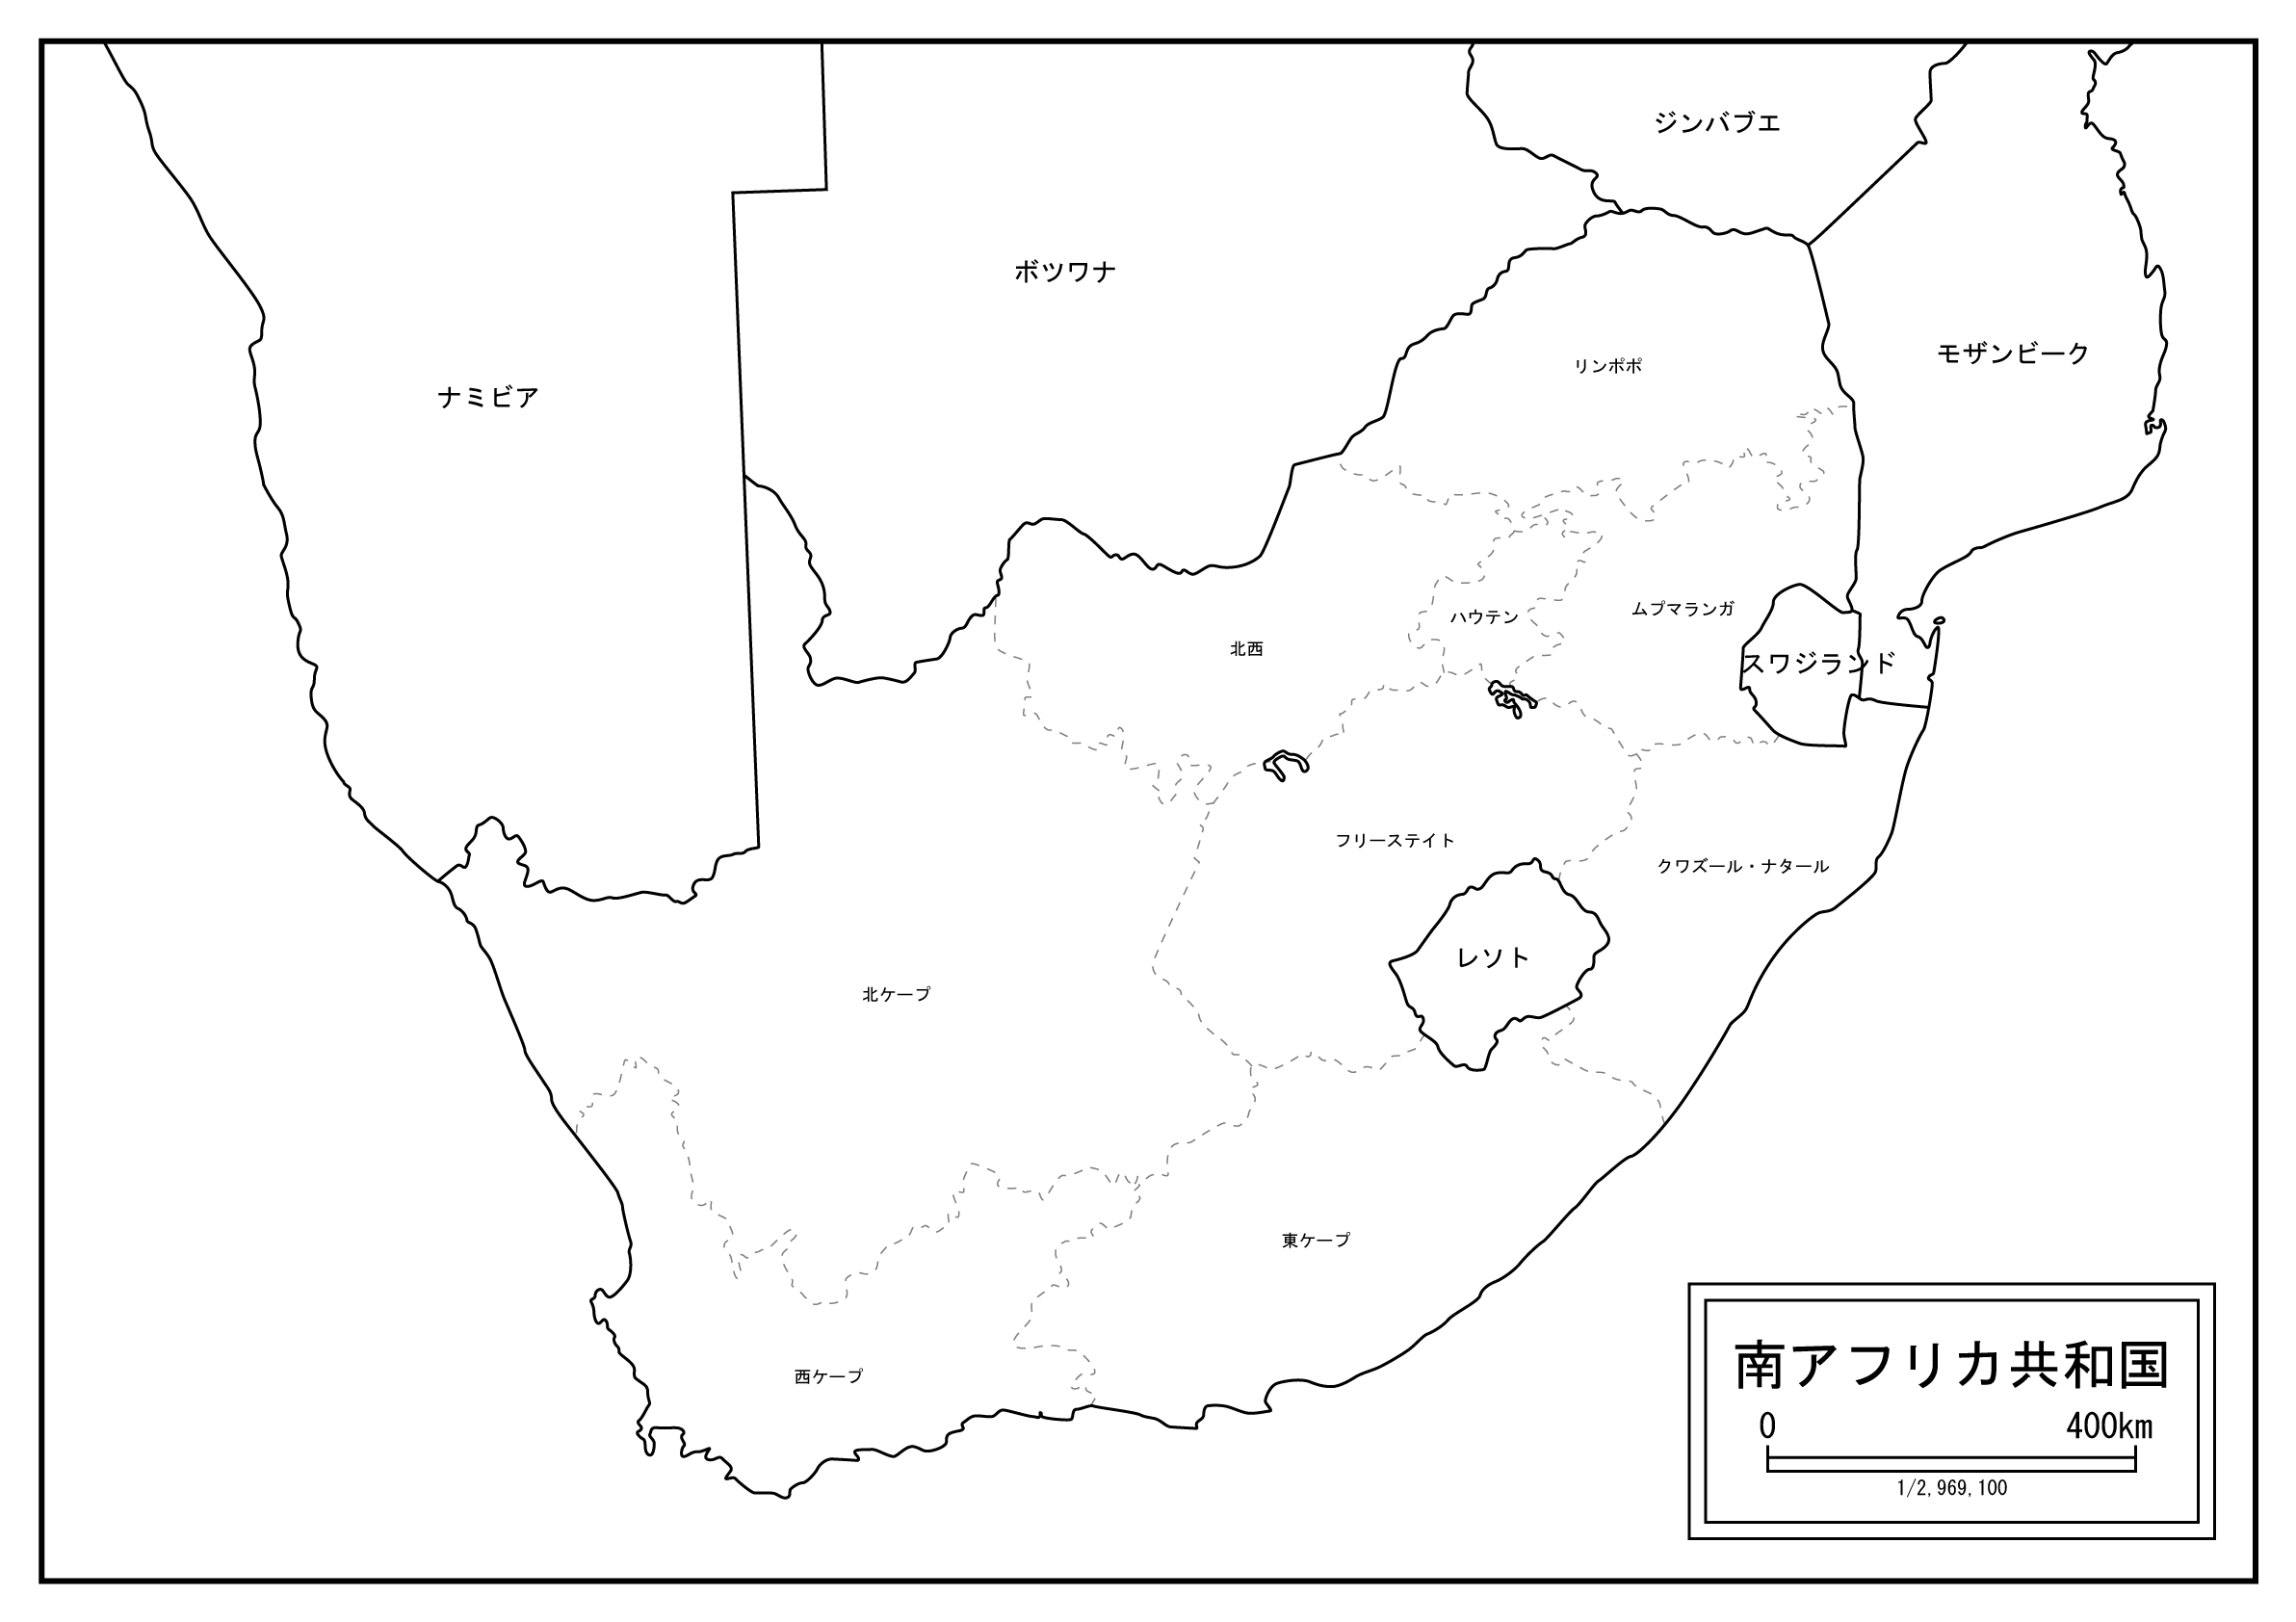 南アフリカ共和国のサムネイル